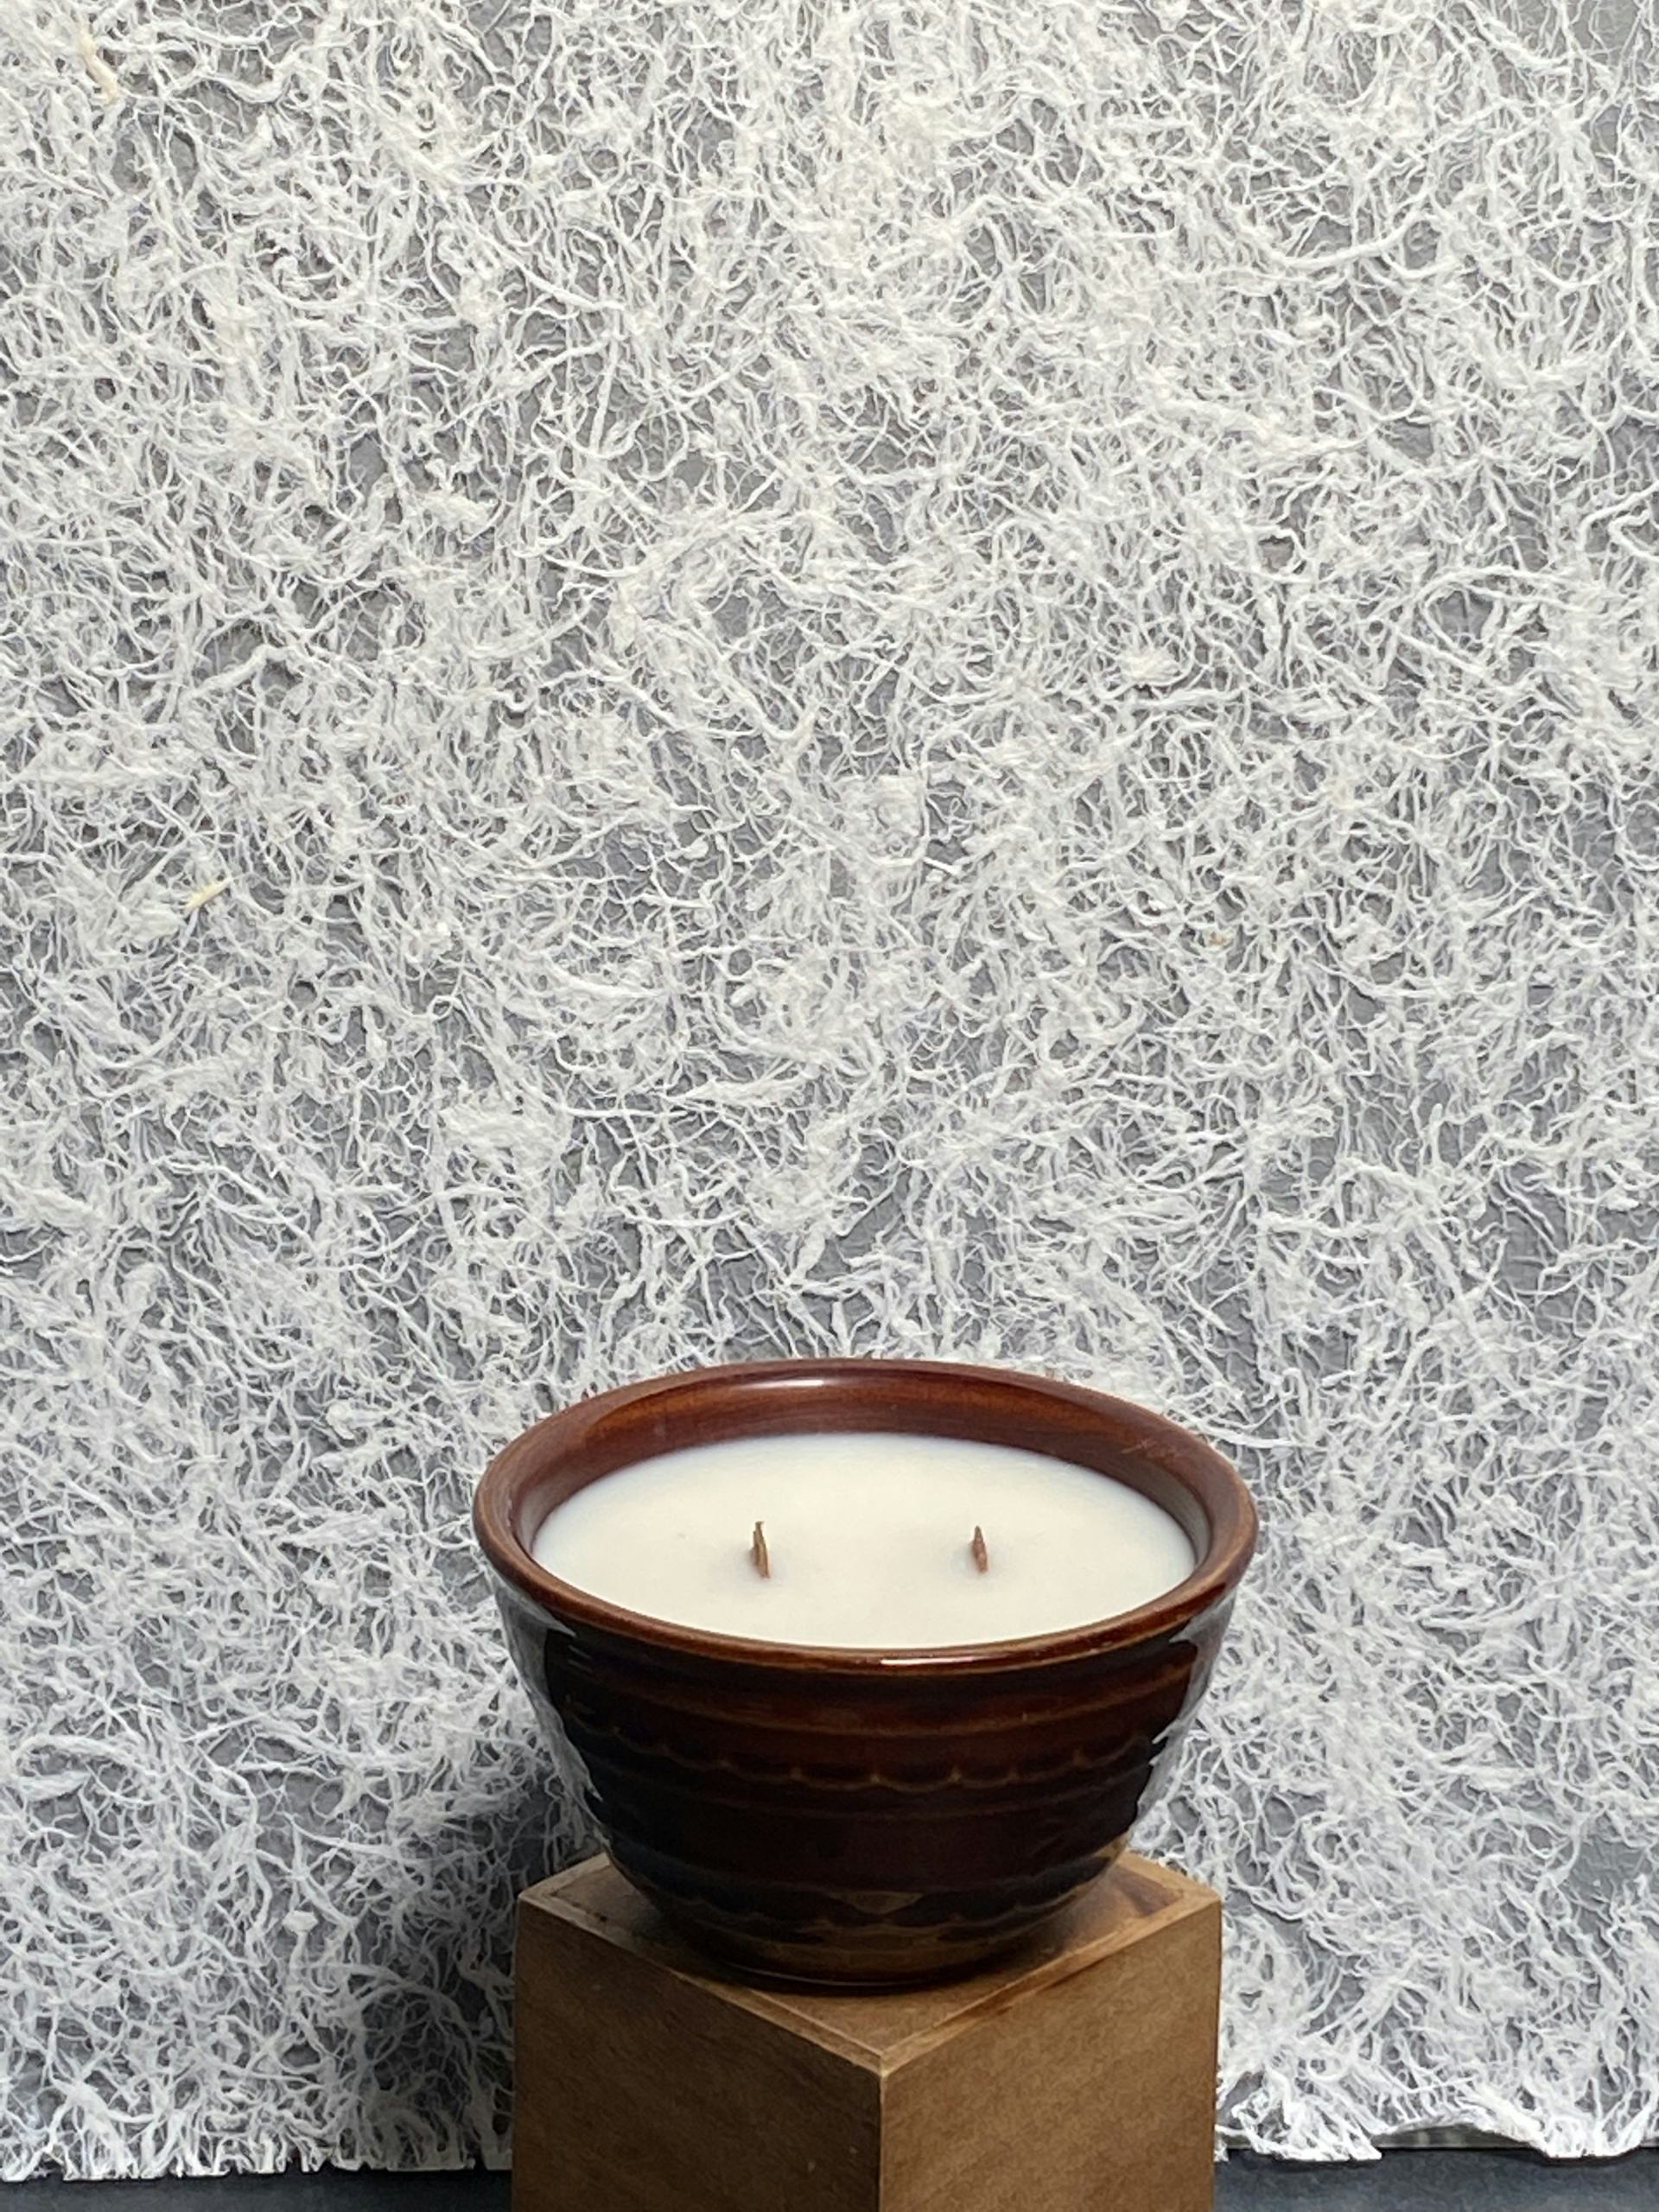 Product Image: Seasonal Fall Candle - Large